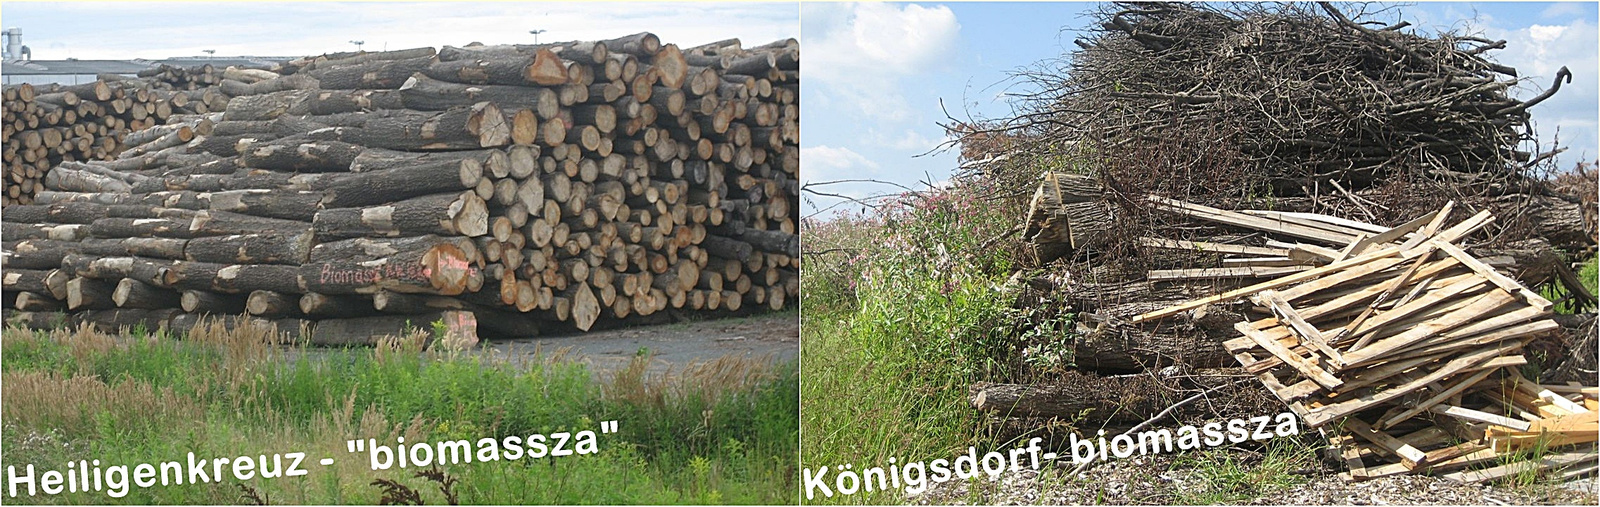 Biomassza a határon 2